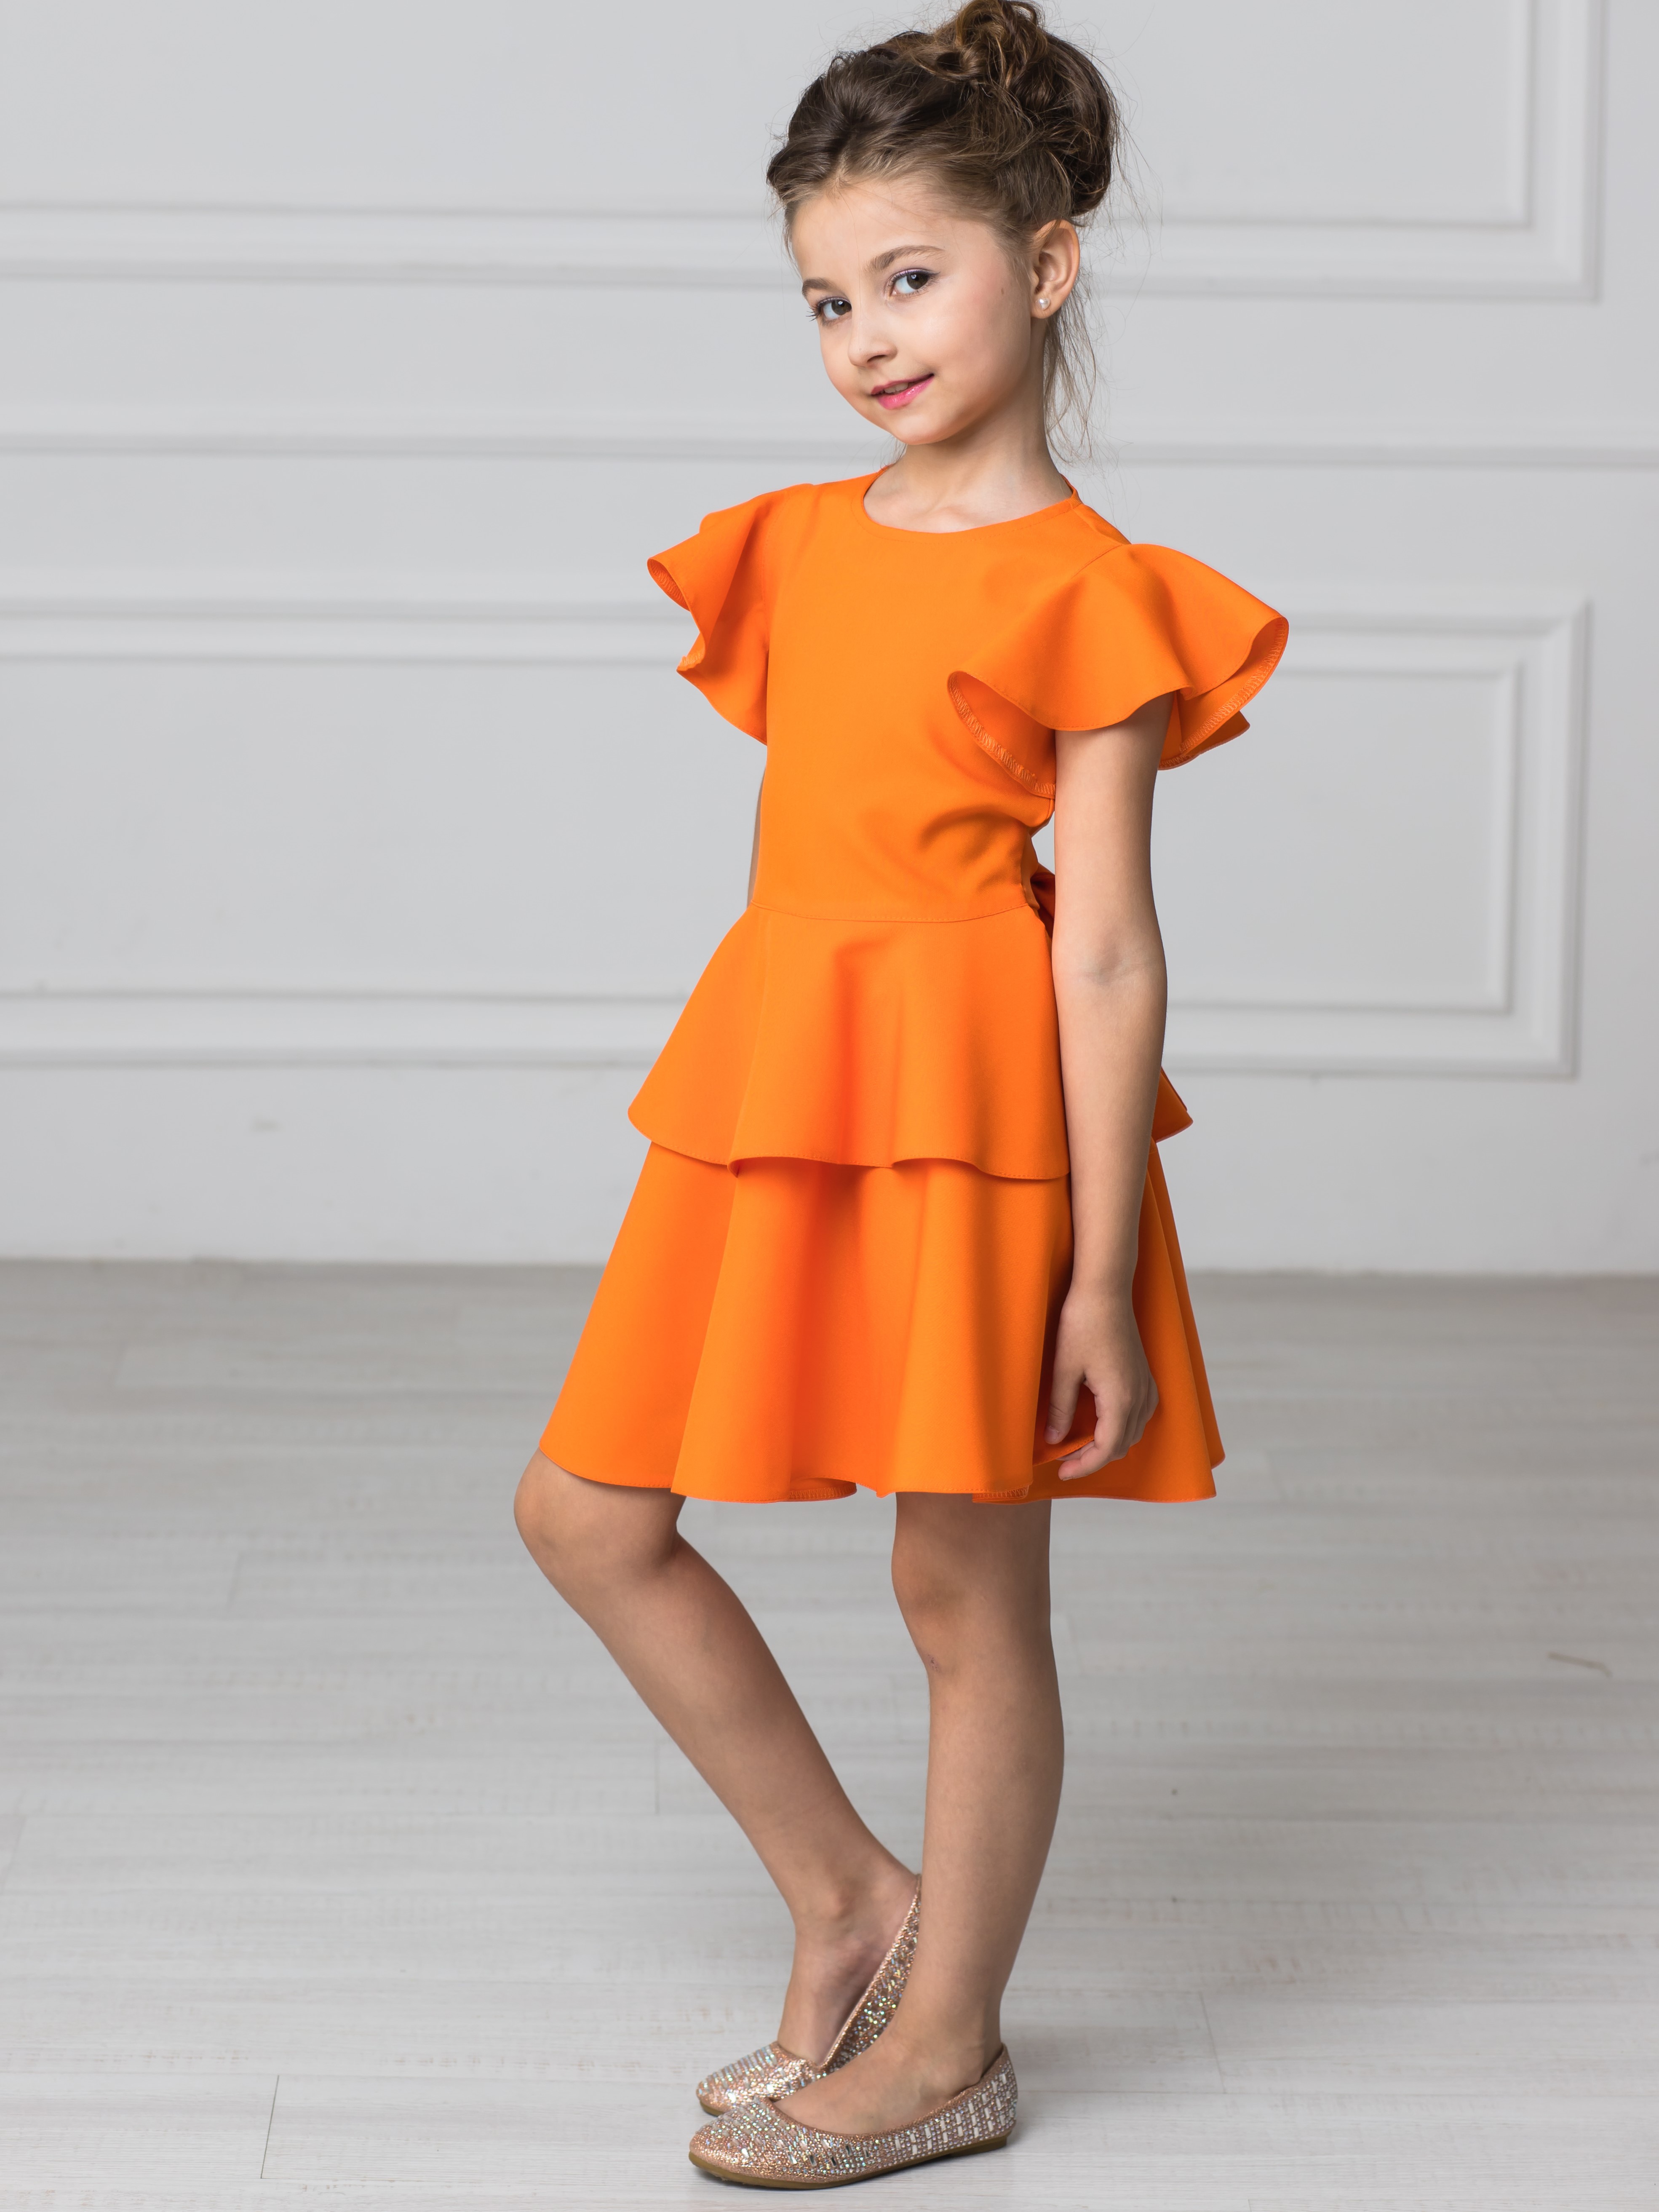 Купить платья для девочек в интернет магазине hb-crm.ru